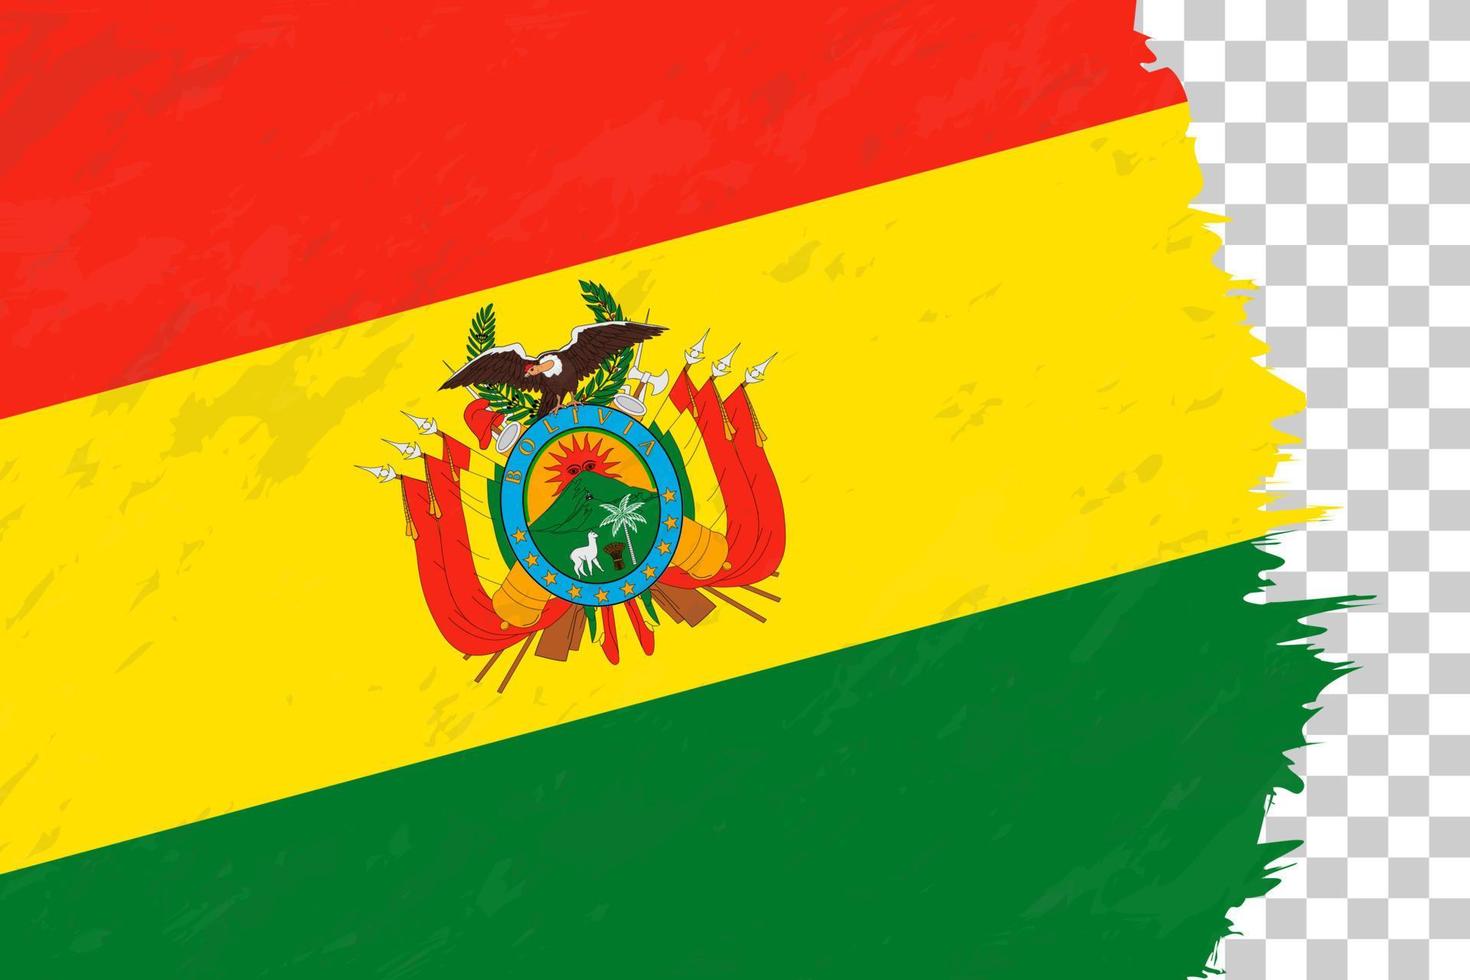 orizzontale astratto grunge spazzolato bandiera della bolivia sulla griglia trasparente. vettore